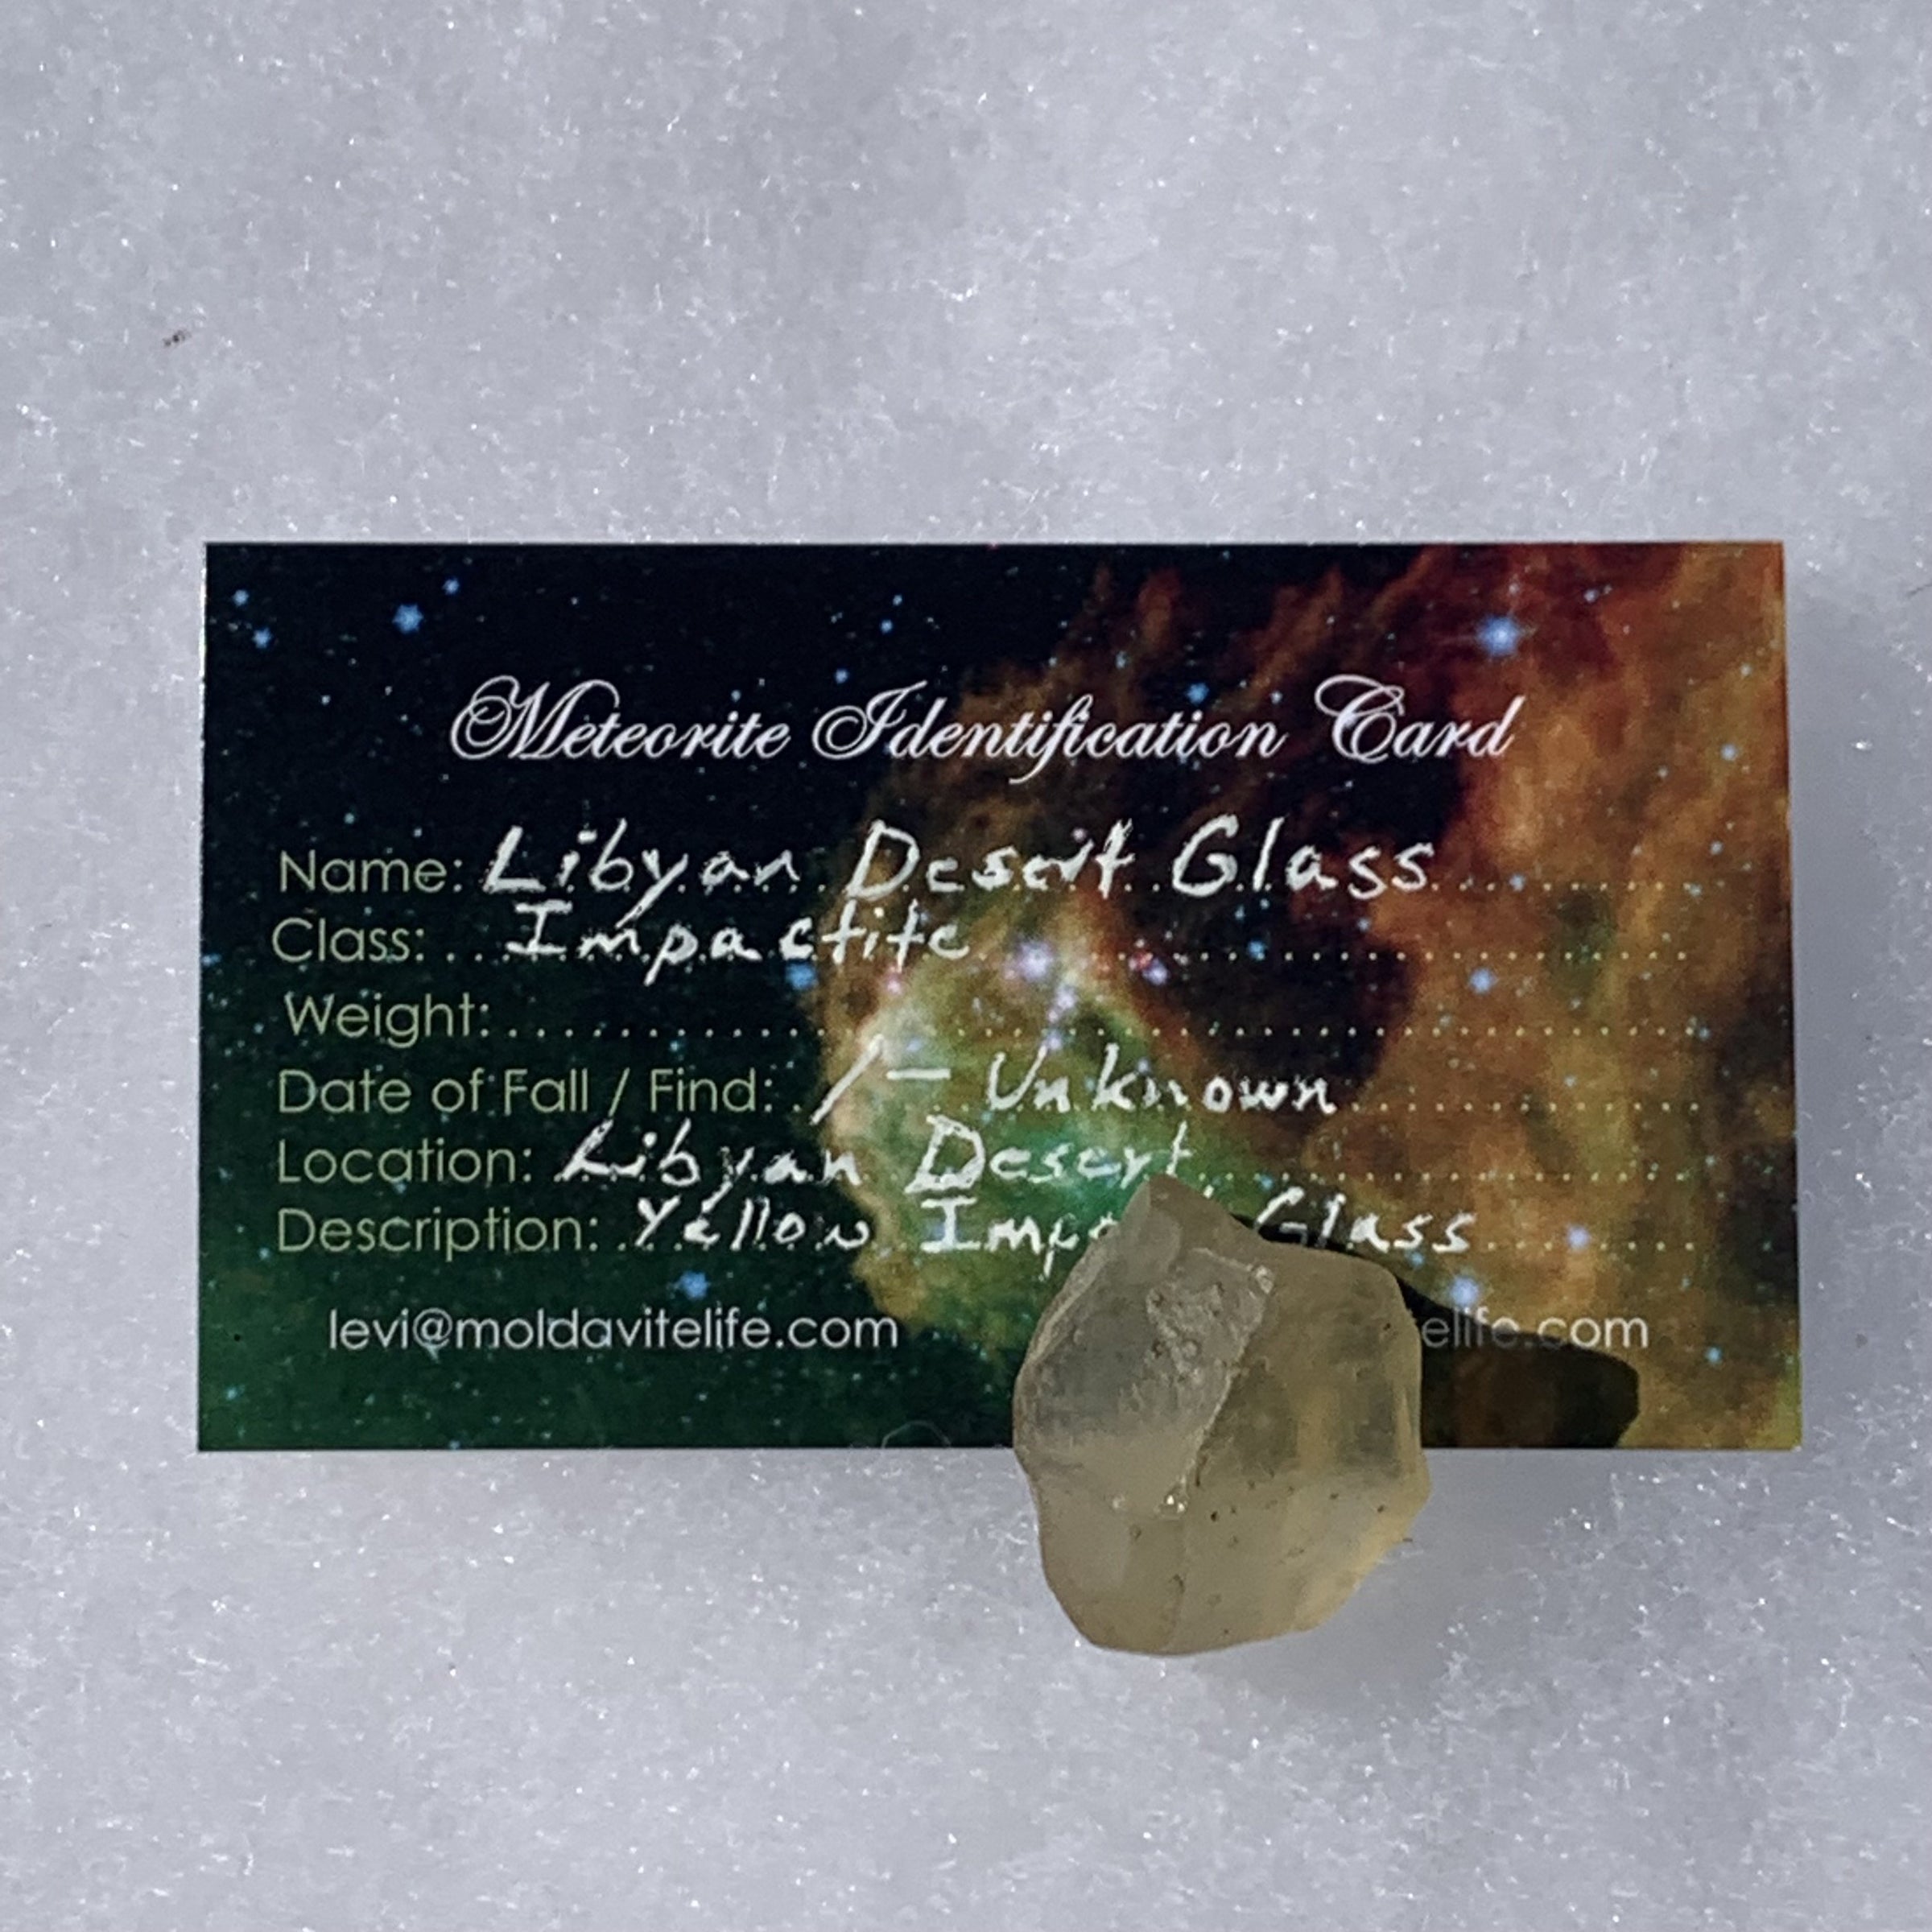 Libyan Desert Glass 9.4 grams-Moldavite Life